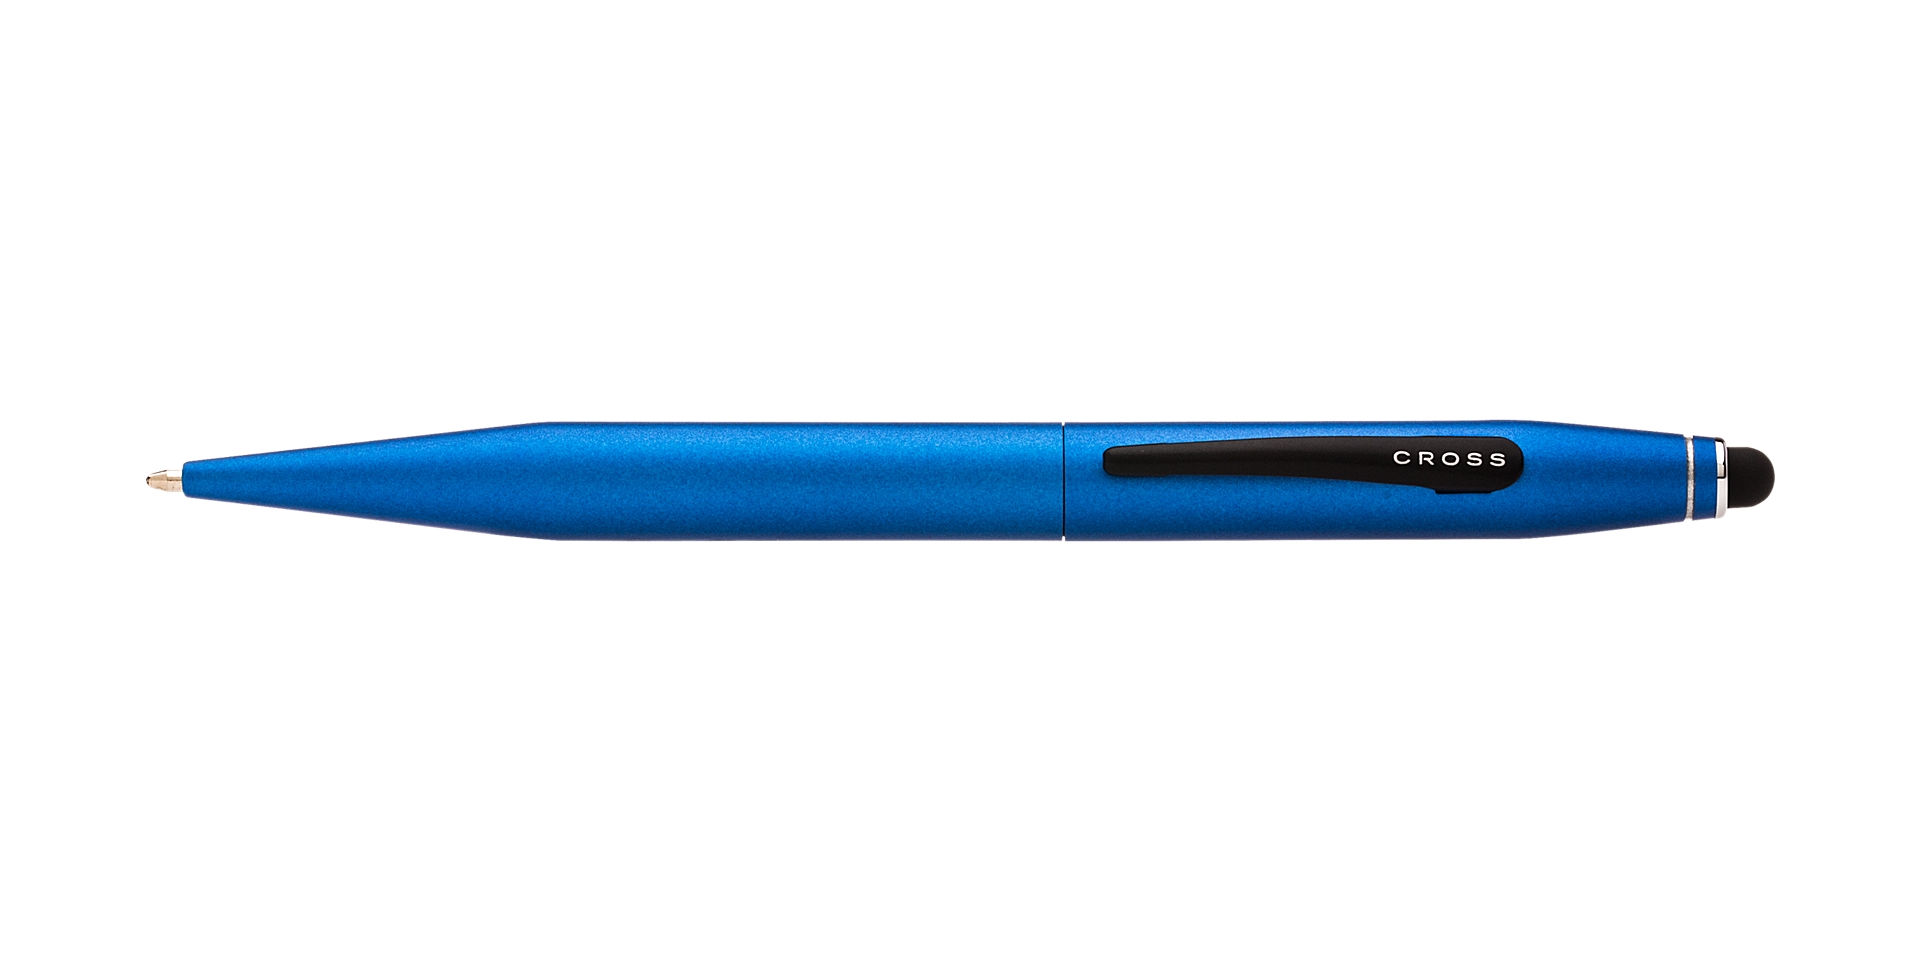  Tech 2 Metallic Blue Ballpoint Pen